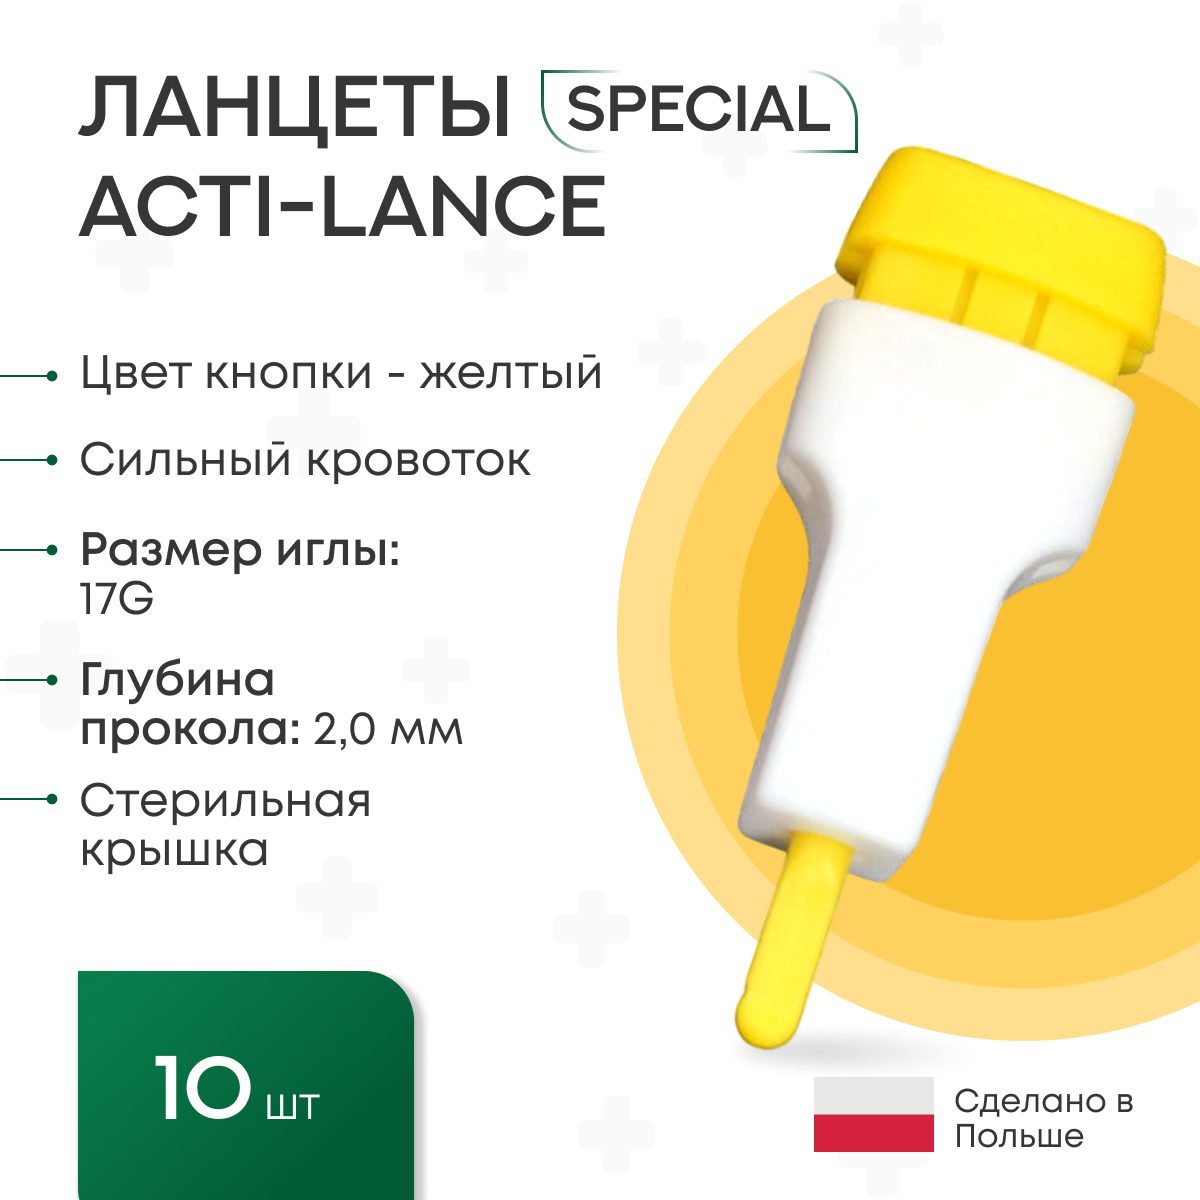 Ланцеты Acti-lance Special для капиллярного забора крови 10 шт., глубина прокола 2,0 мм, желтые